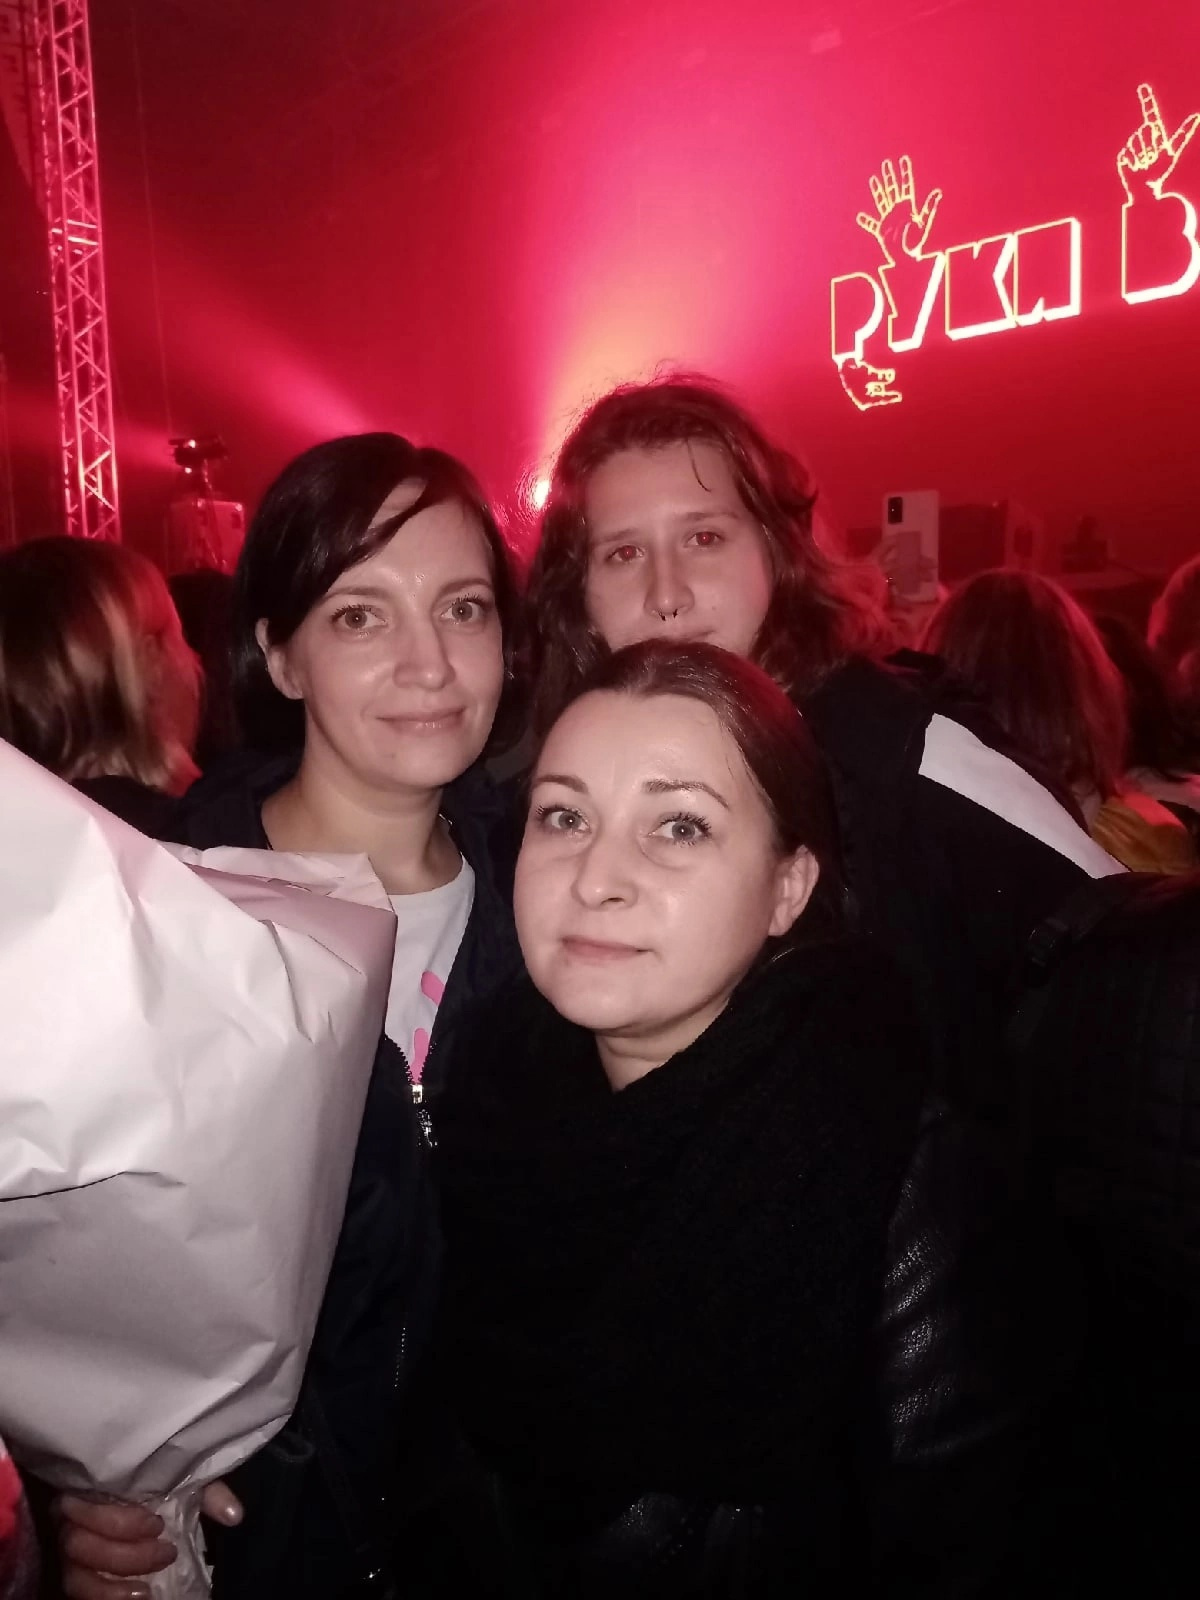 Анастасия (слева) со своей компанией на концерте: девушек выступление Сергея Жукова порадовало